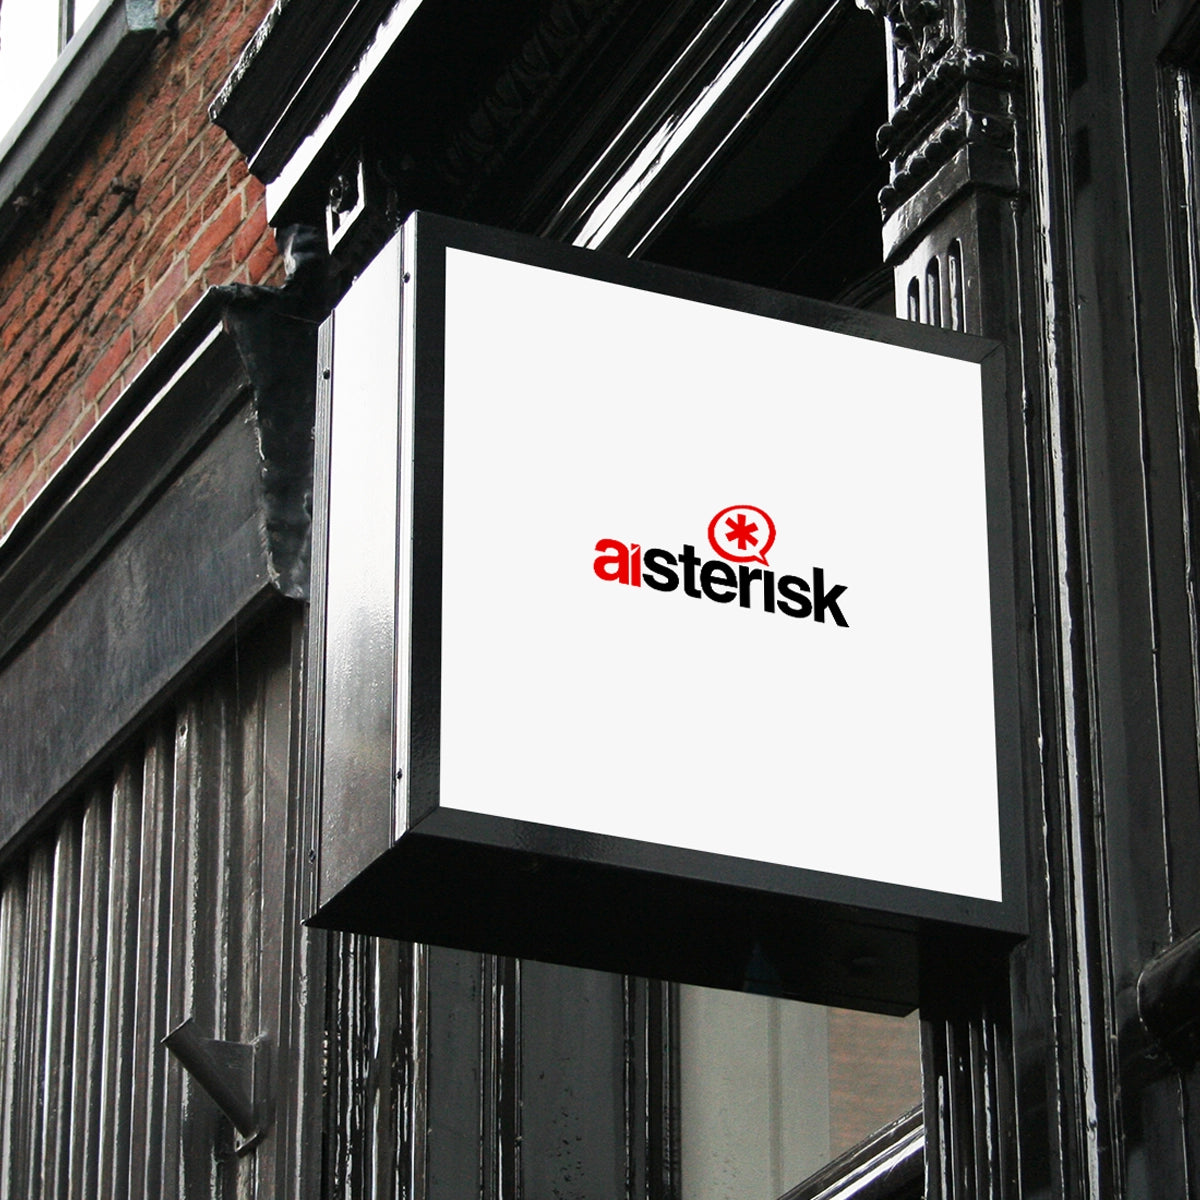 Aisterisk.com